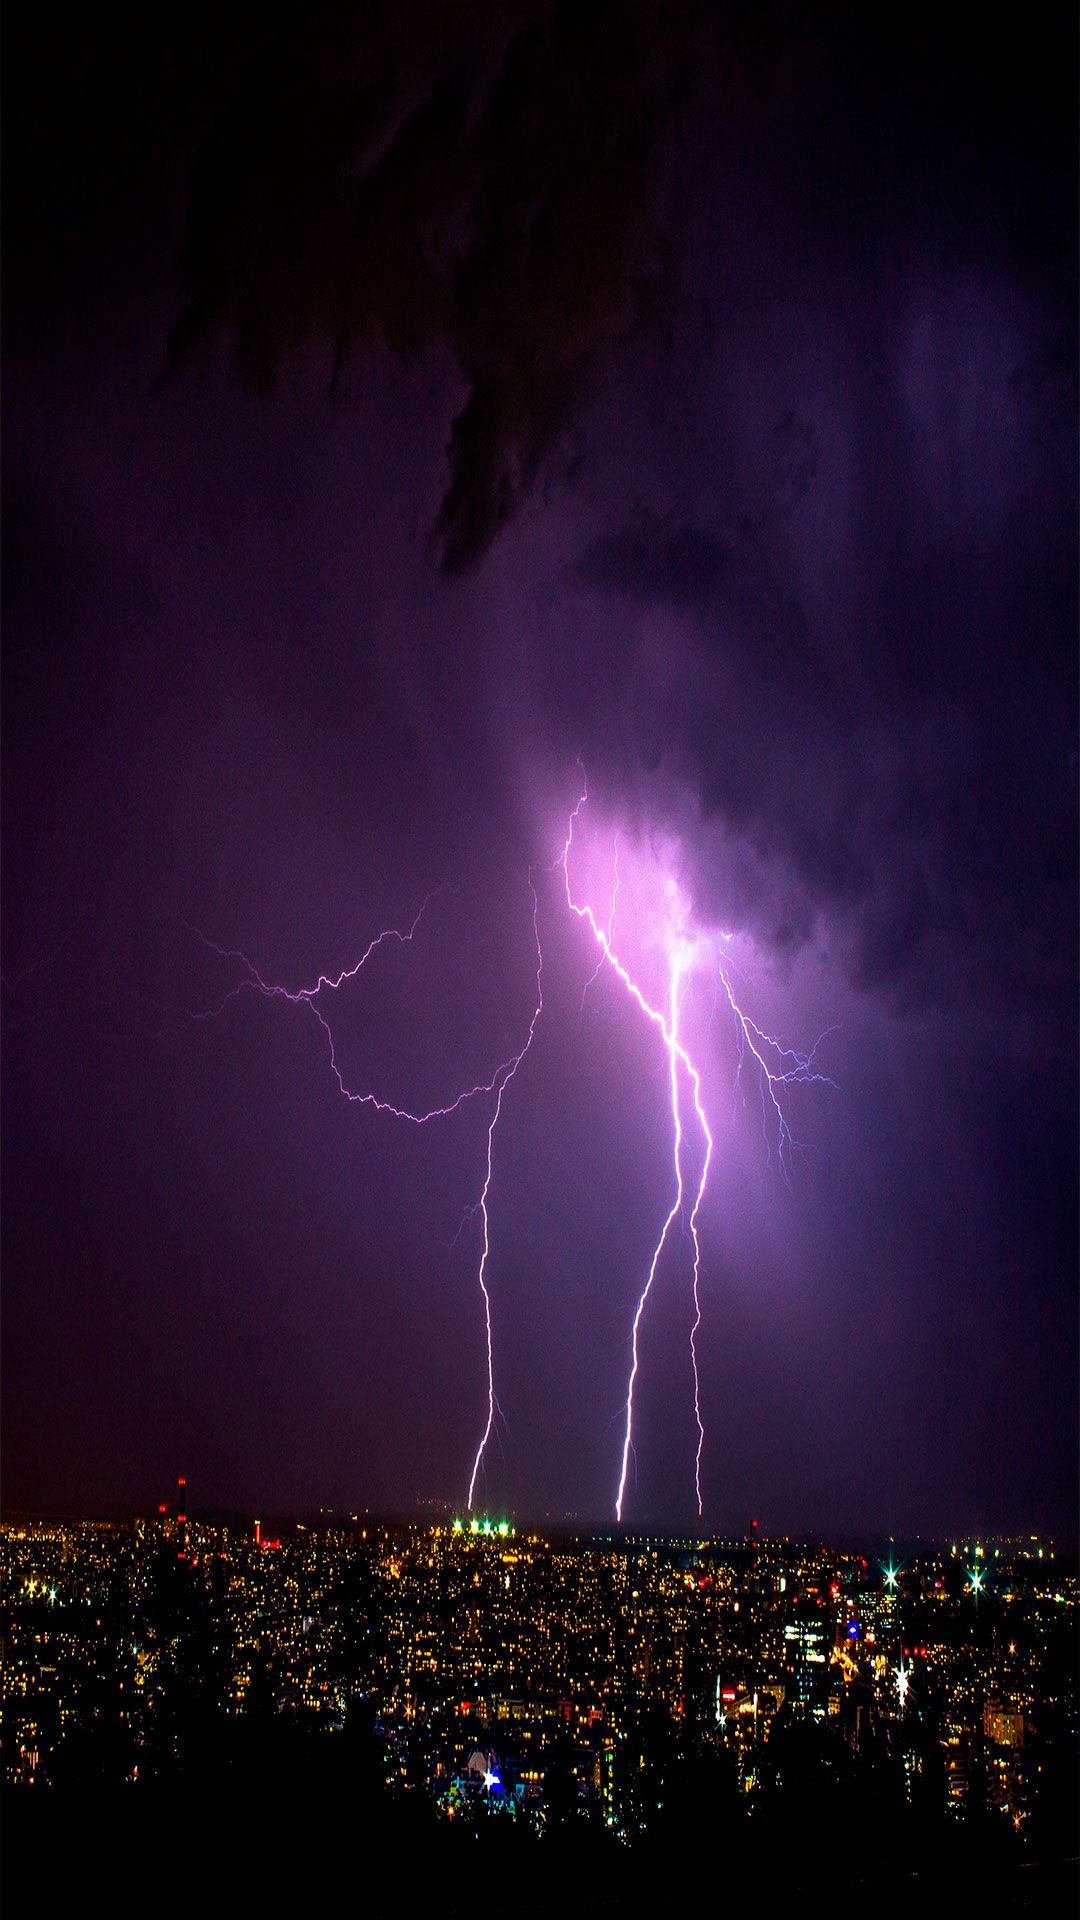 Lightning strikes over a city at night - Lightning